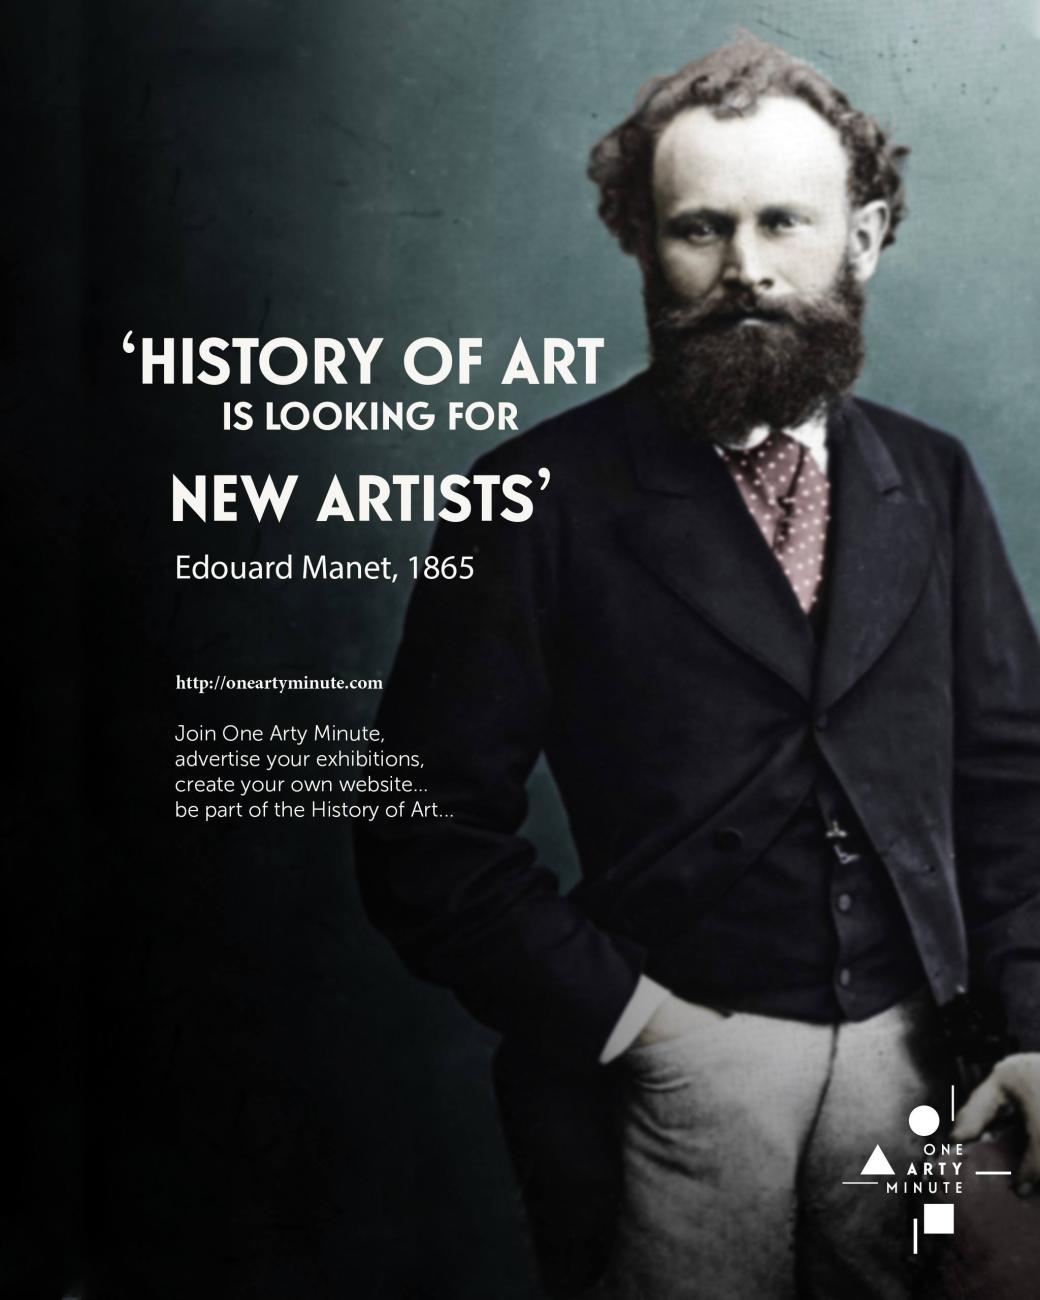 Edouard Manet, Rejoignez One Arty Minute, annoncez vos expositions, vendez vos oeuvres et créez votre catalogue raisonné